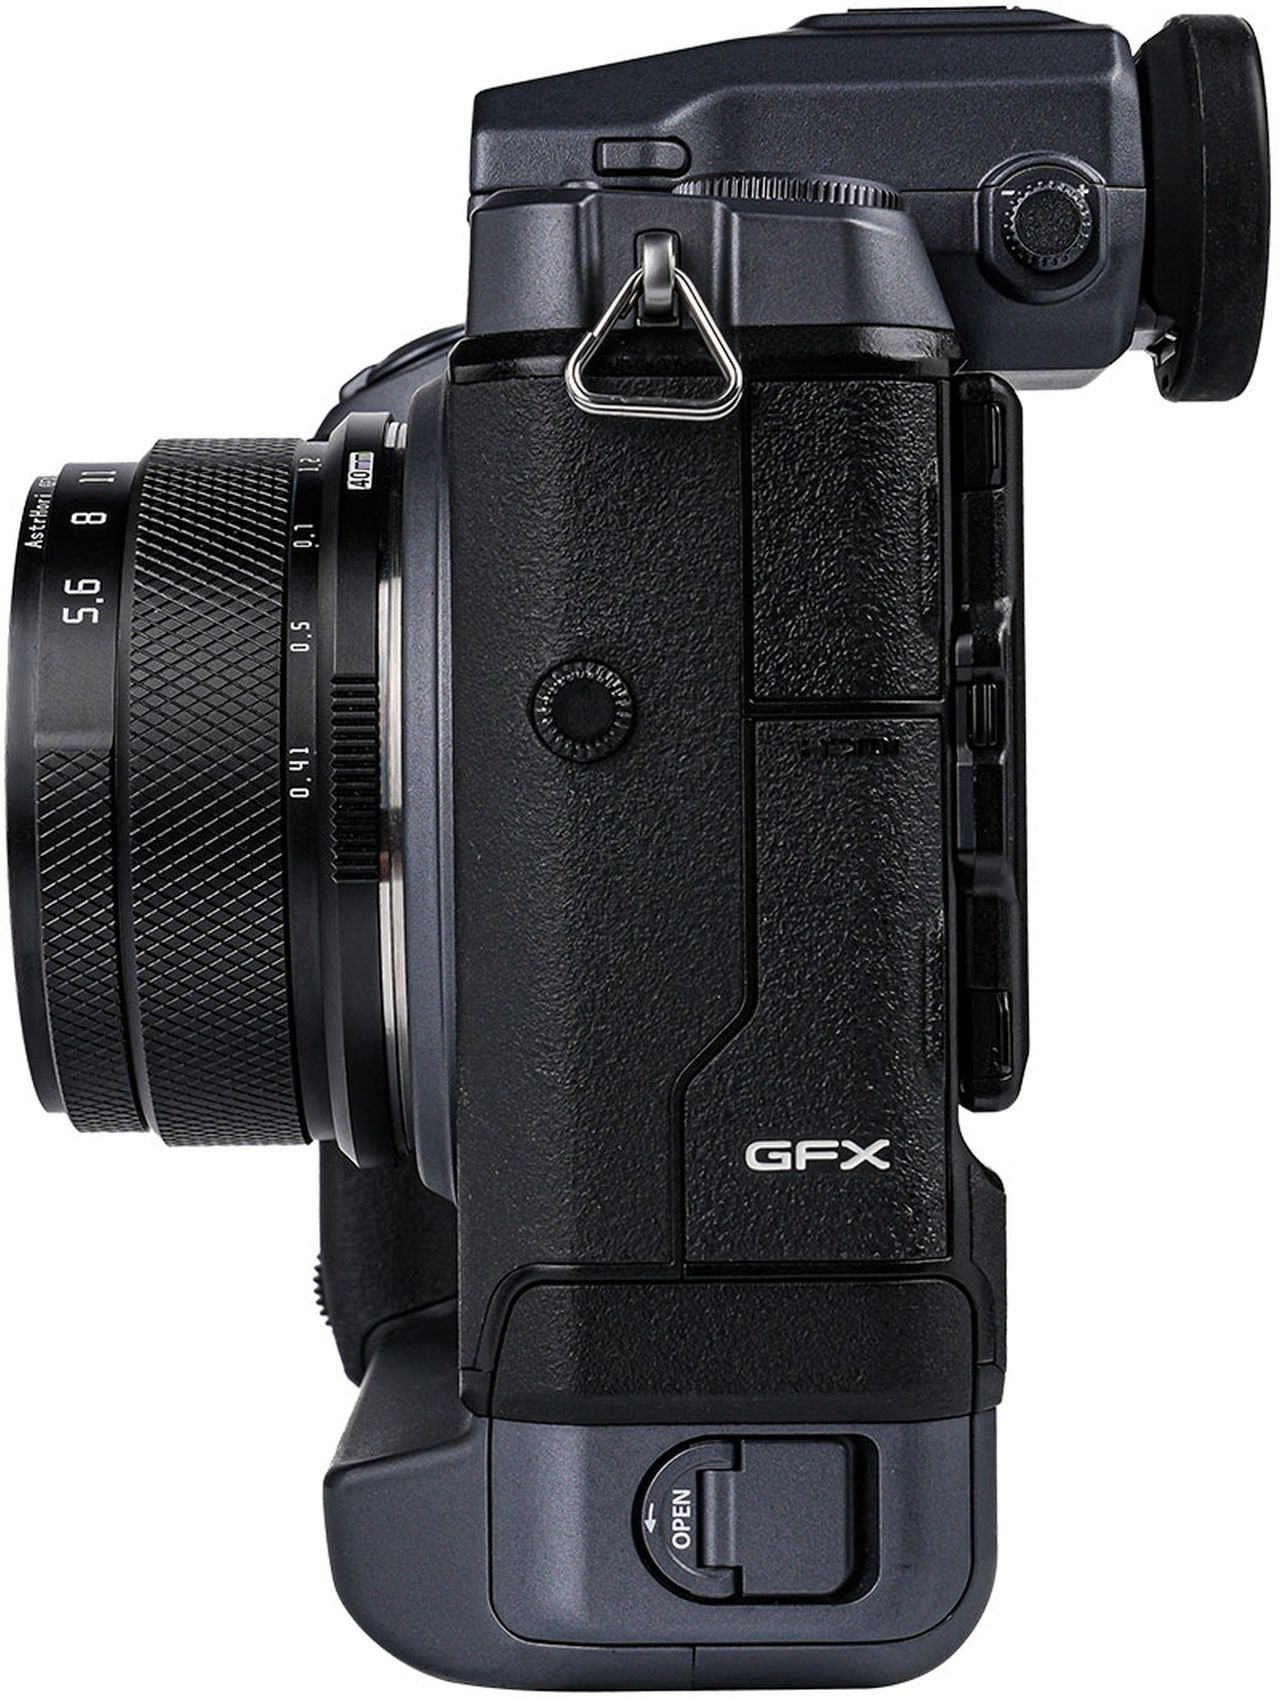 AstrHori 40mm f5.6 for Fuji GFX